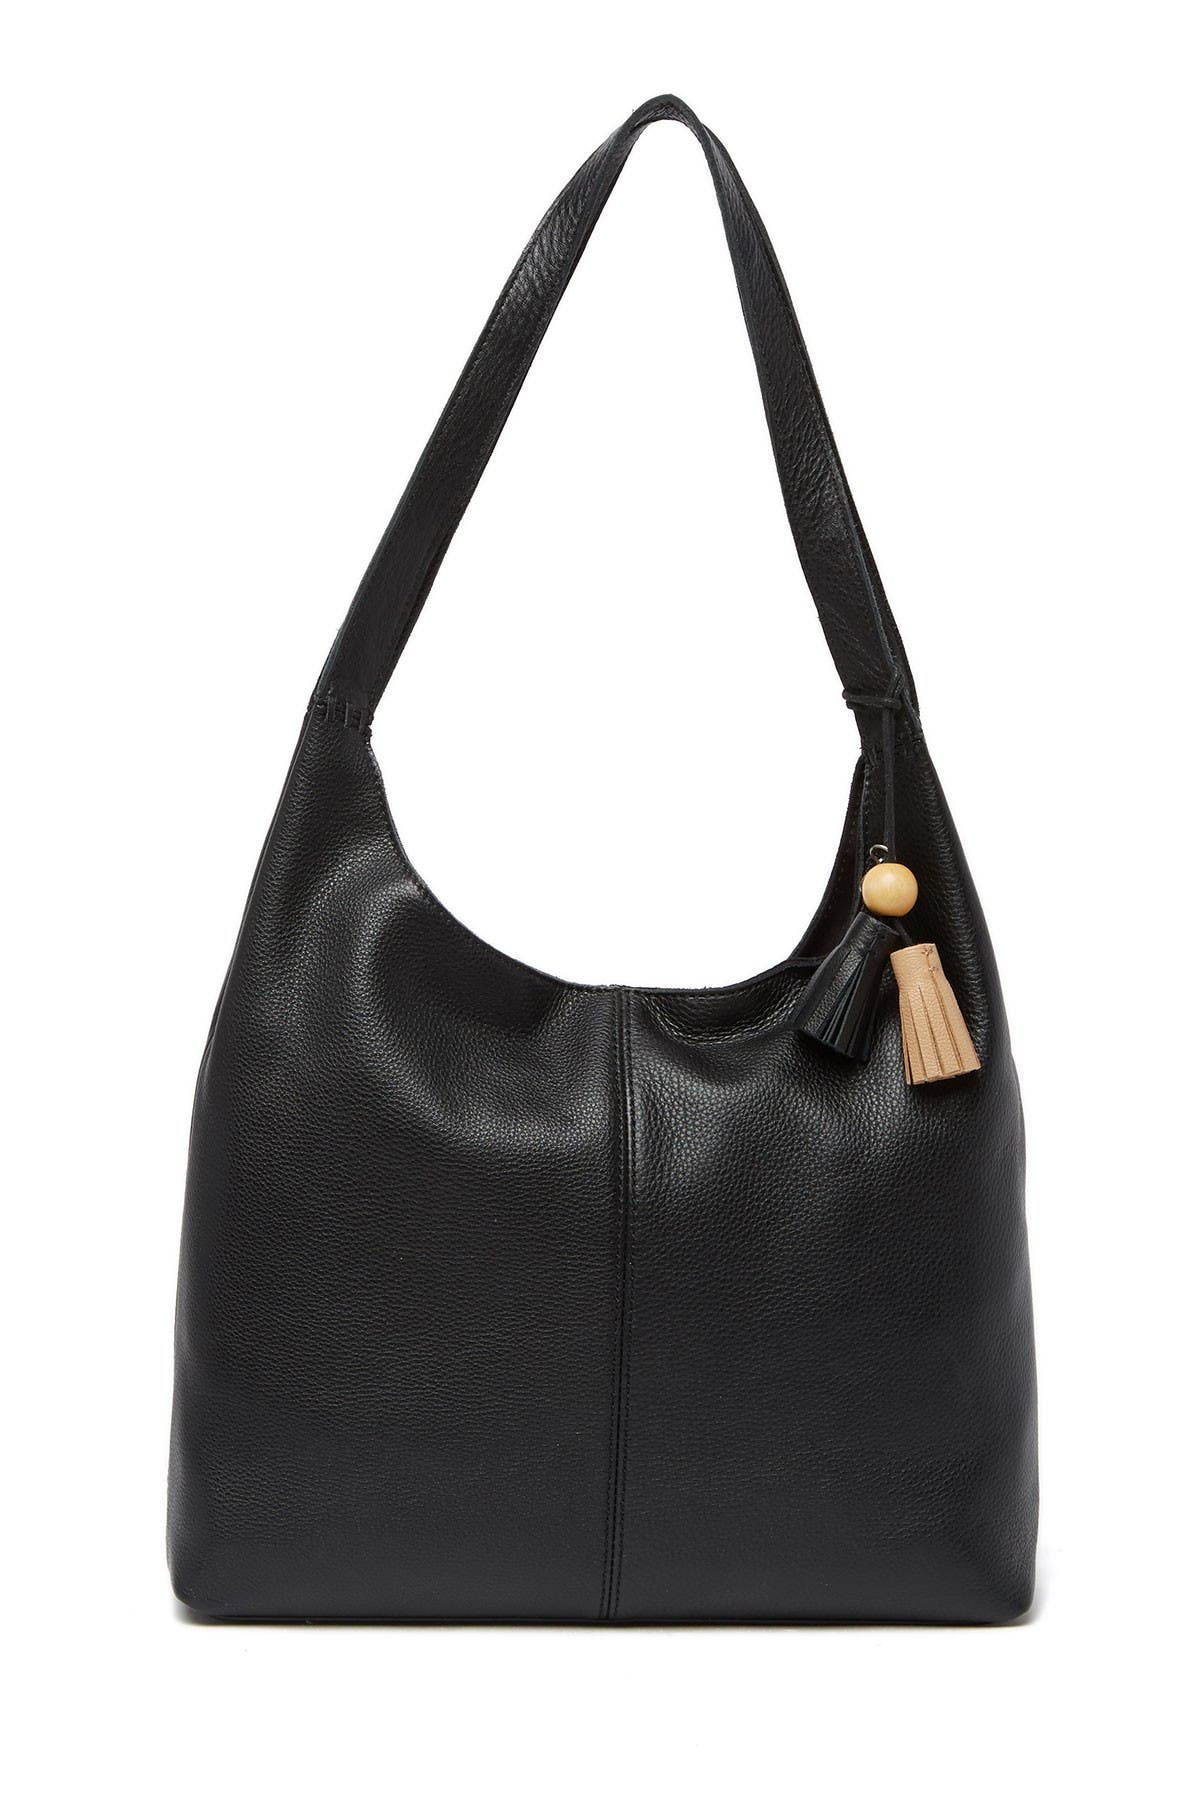 The Sak Leather Hobo Bag In Black